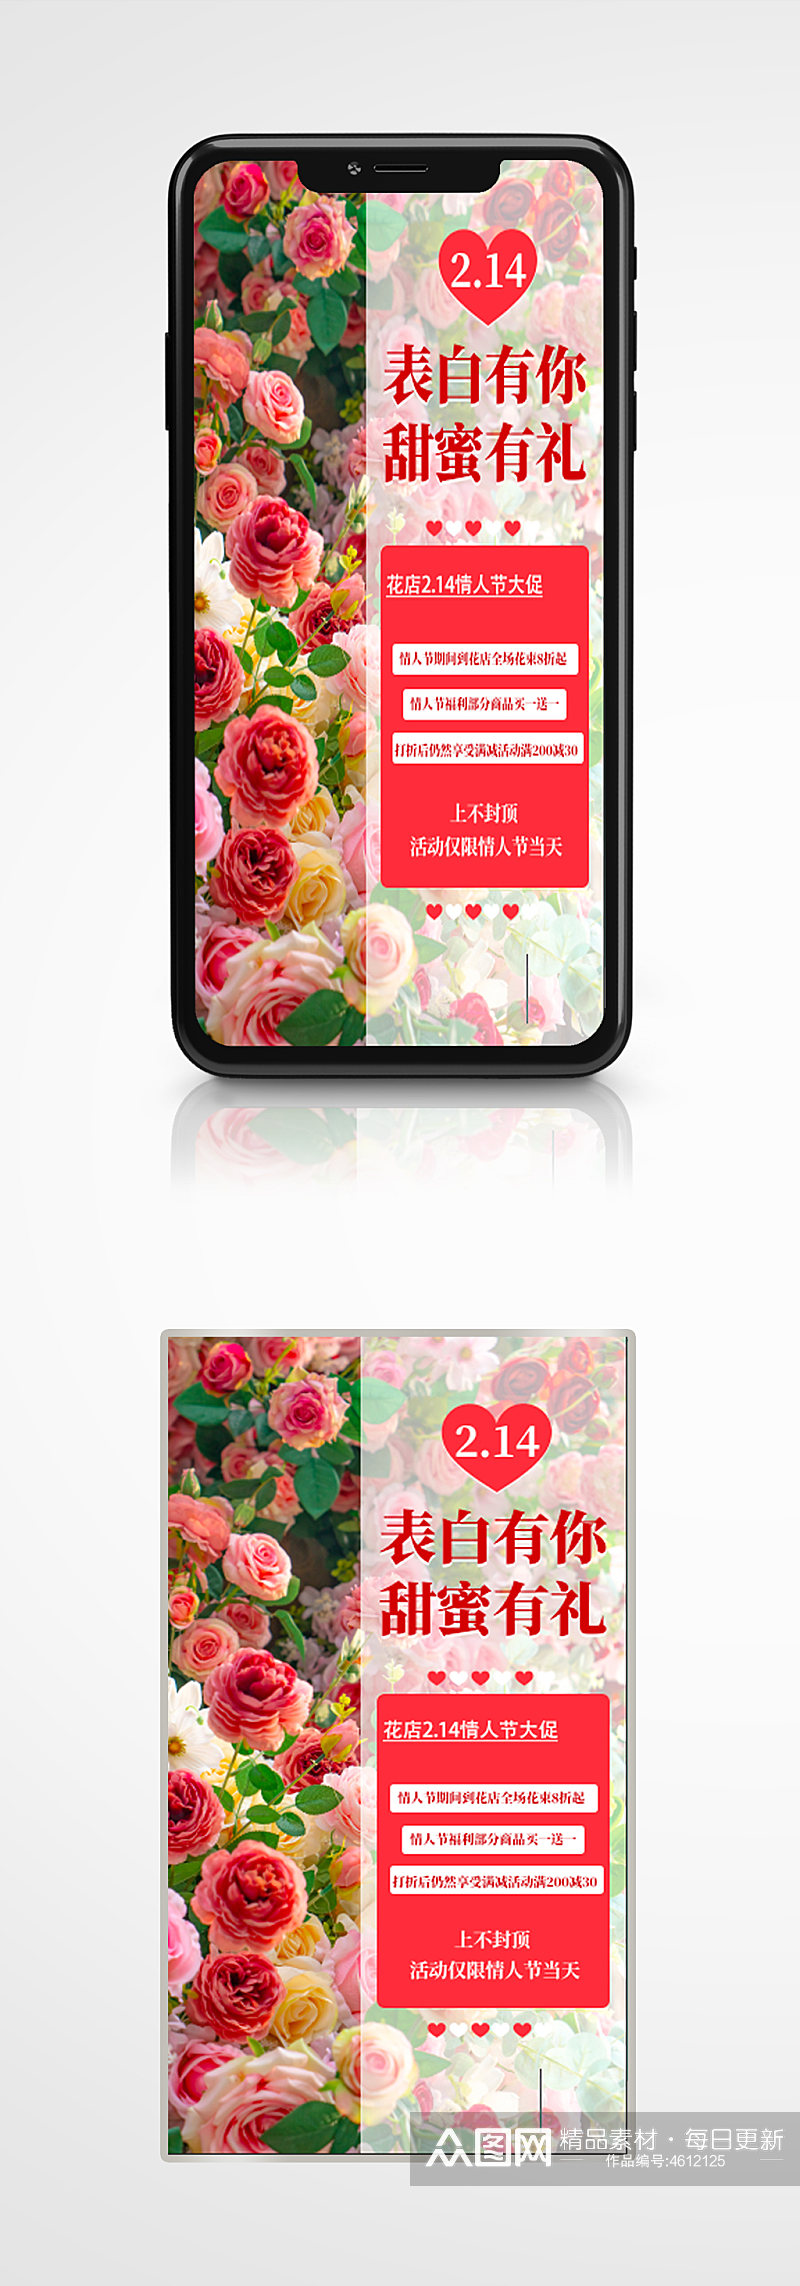 情人节花店促销手机海报214玫瑰花告白 H5素材